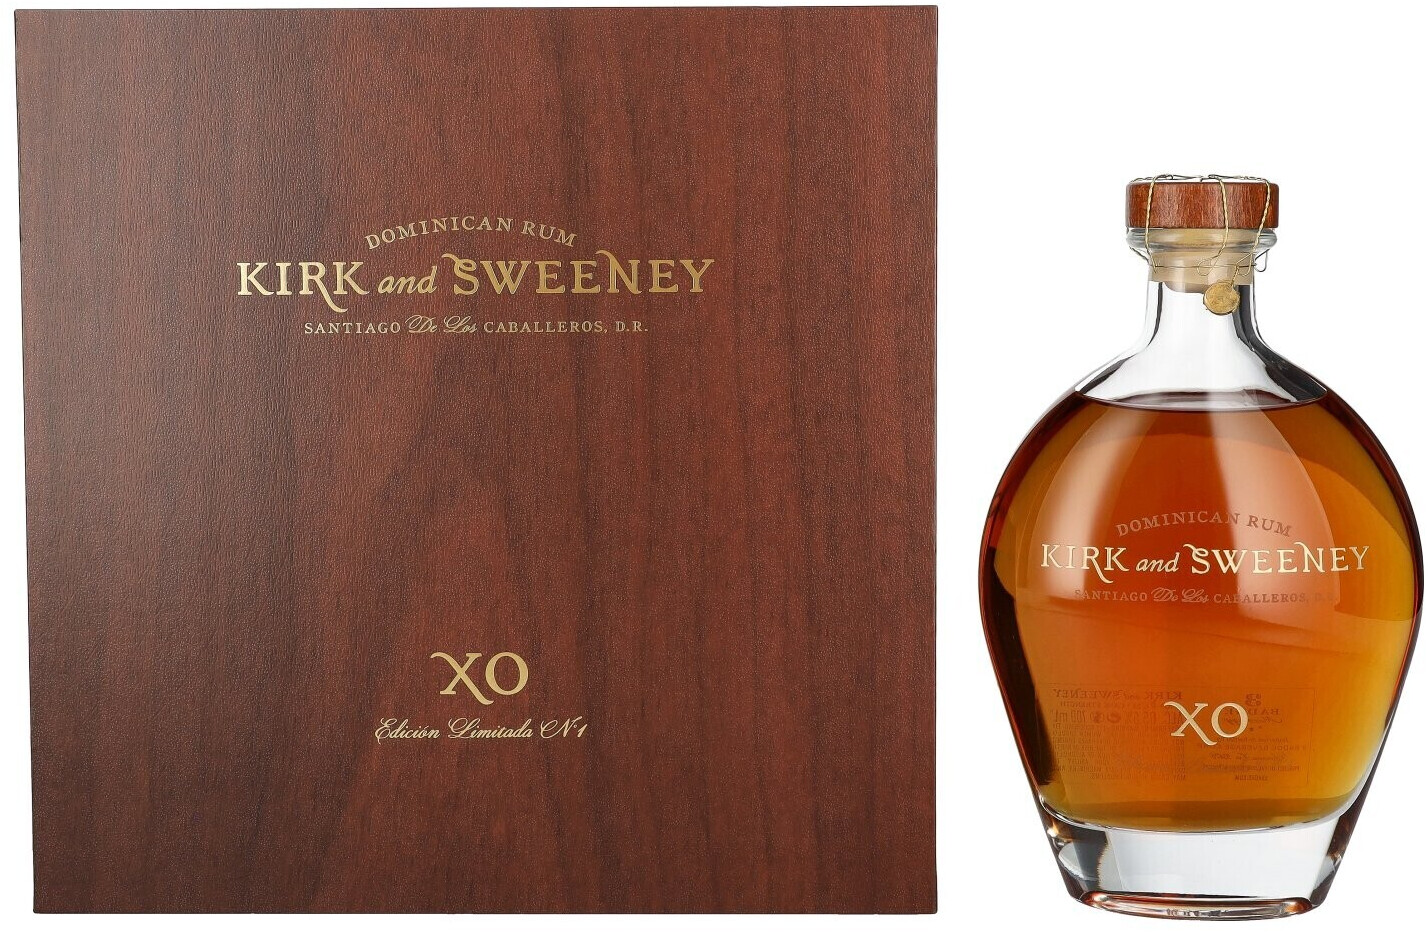 Kirk & Sweeney XO Dominican Rum Edicion Limitada No.1 0,7l 65,5% desde  213,89 €